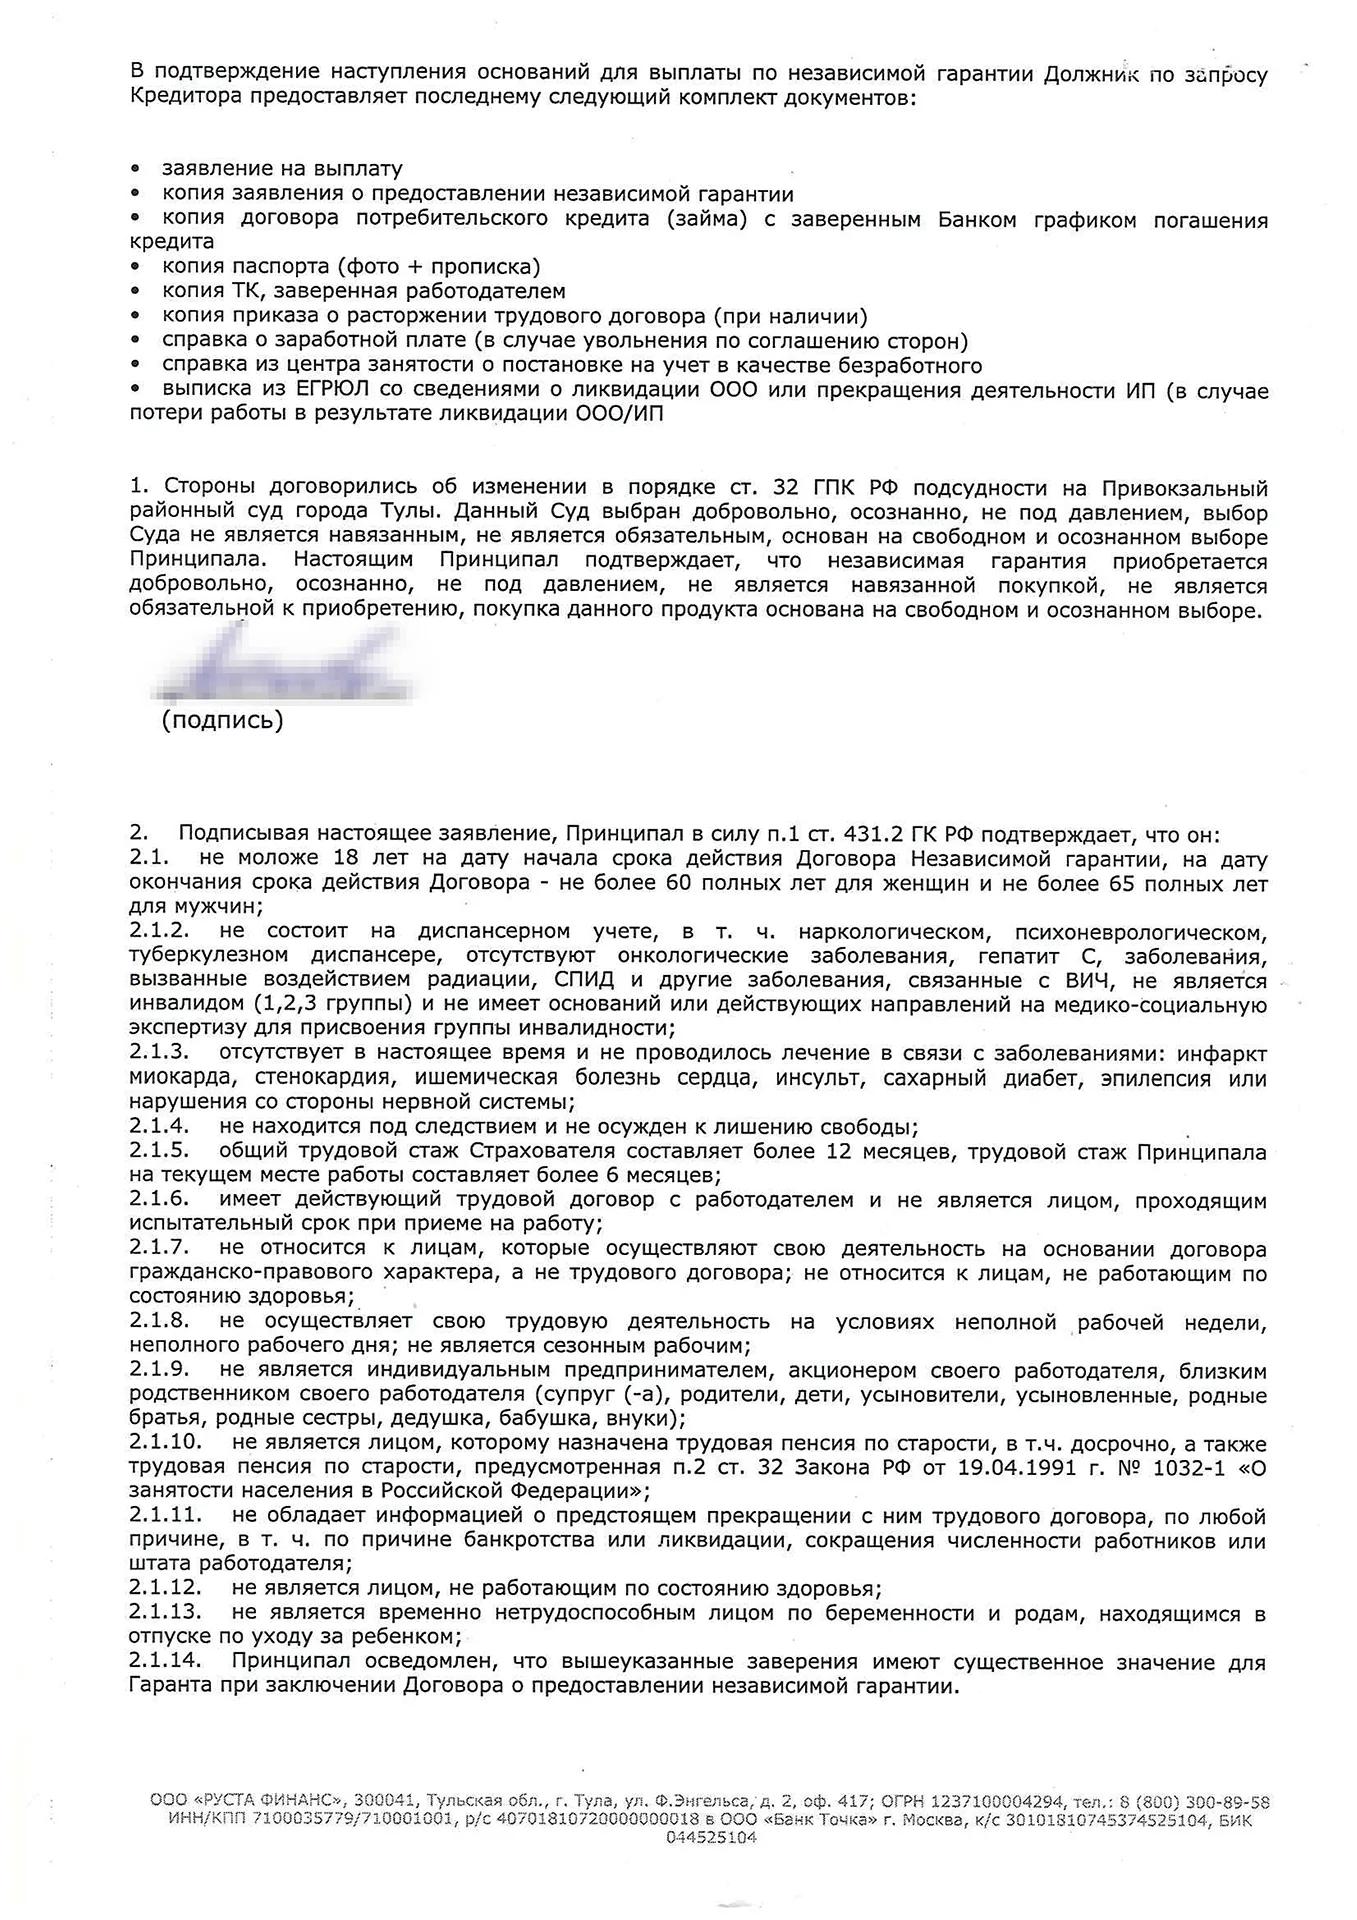 Договор о выдаче независимой гарантии ООО РУСТА ФИНАНС - 0002